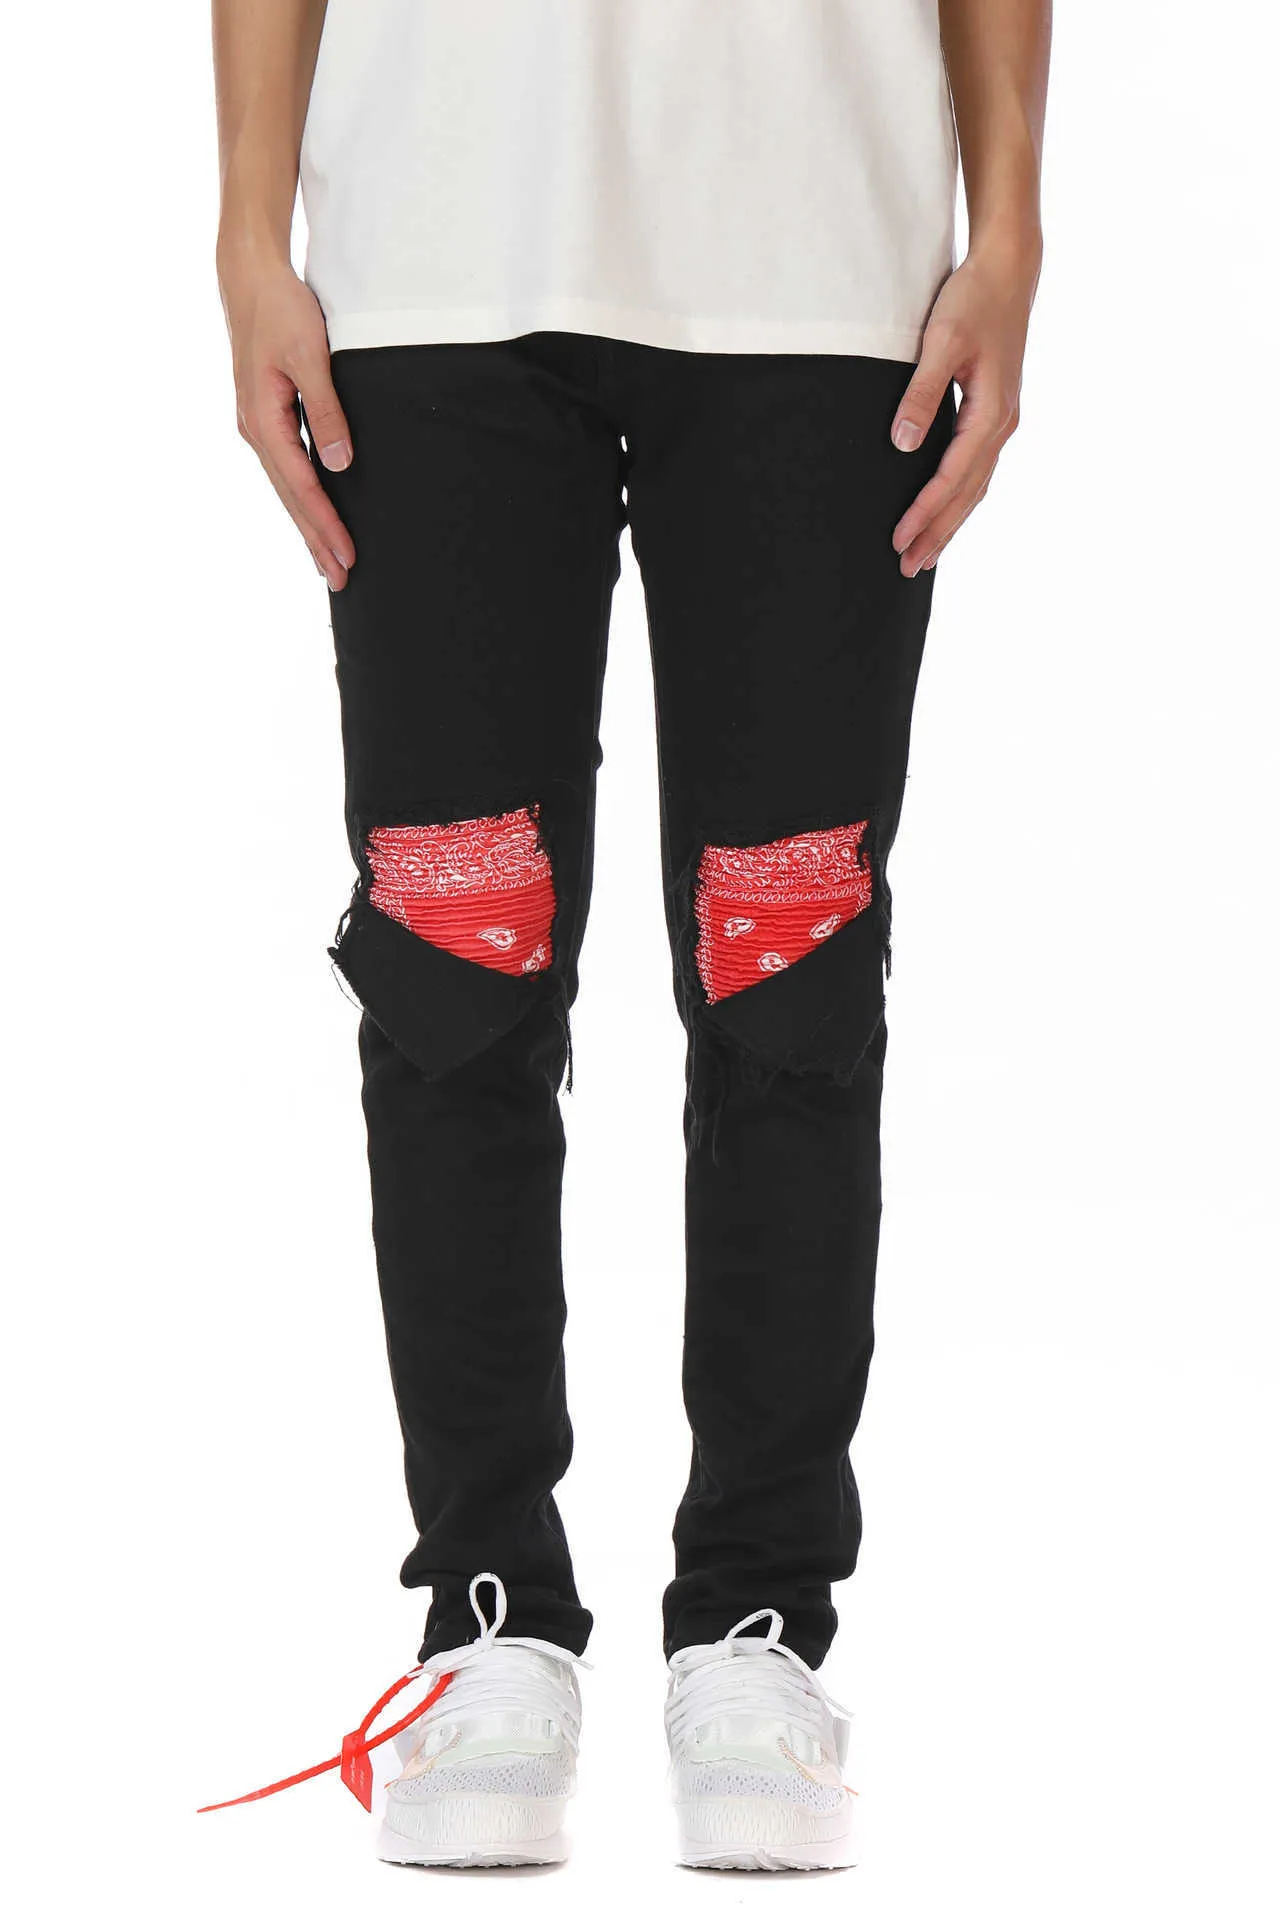 Mäns jeans tvättade hål katt skägg lapptäcke cashewnöt lila röda amoeba jeans smala fit mikro elastiska jeans298g